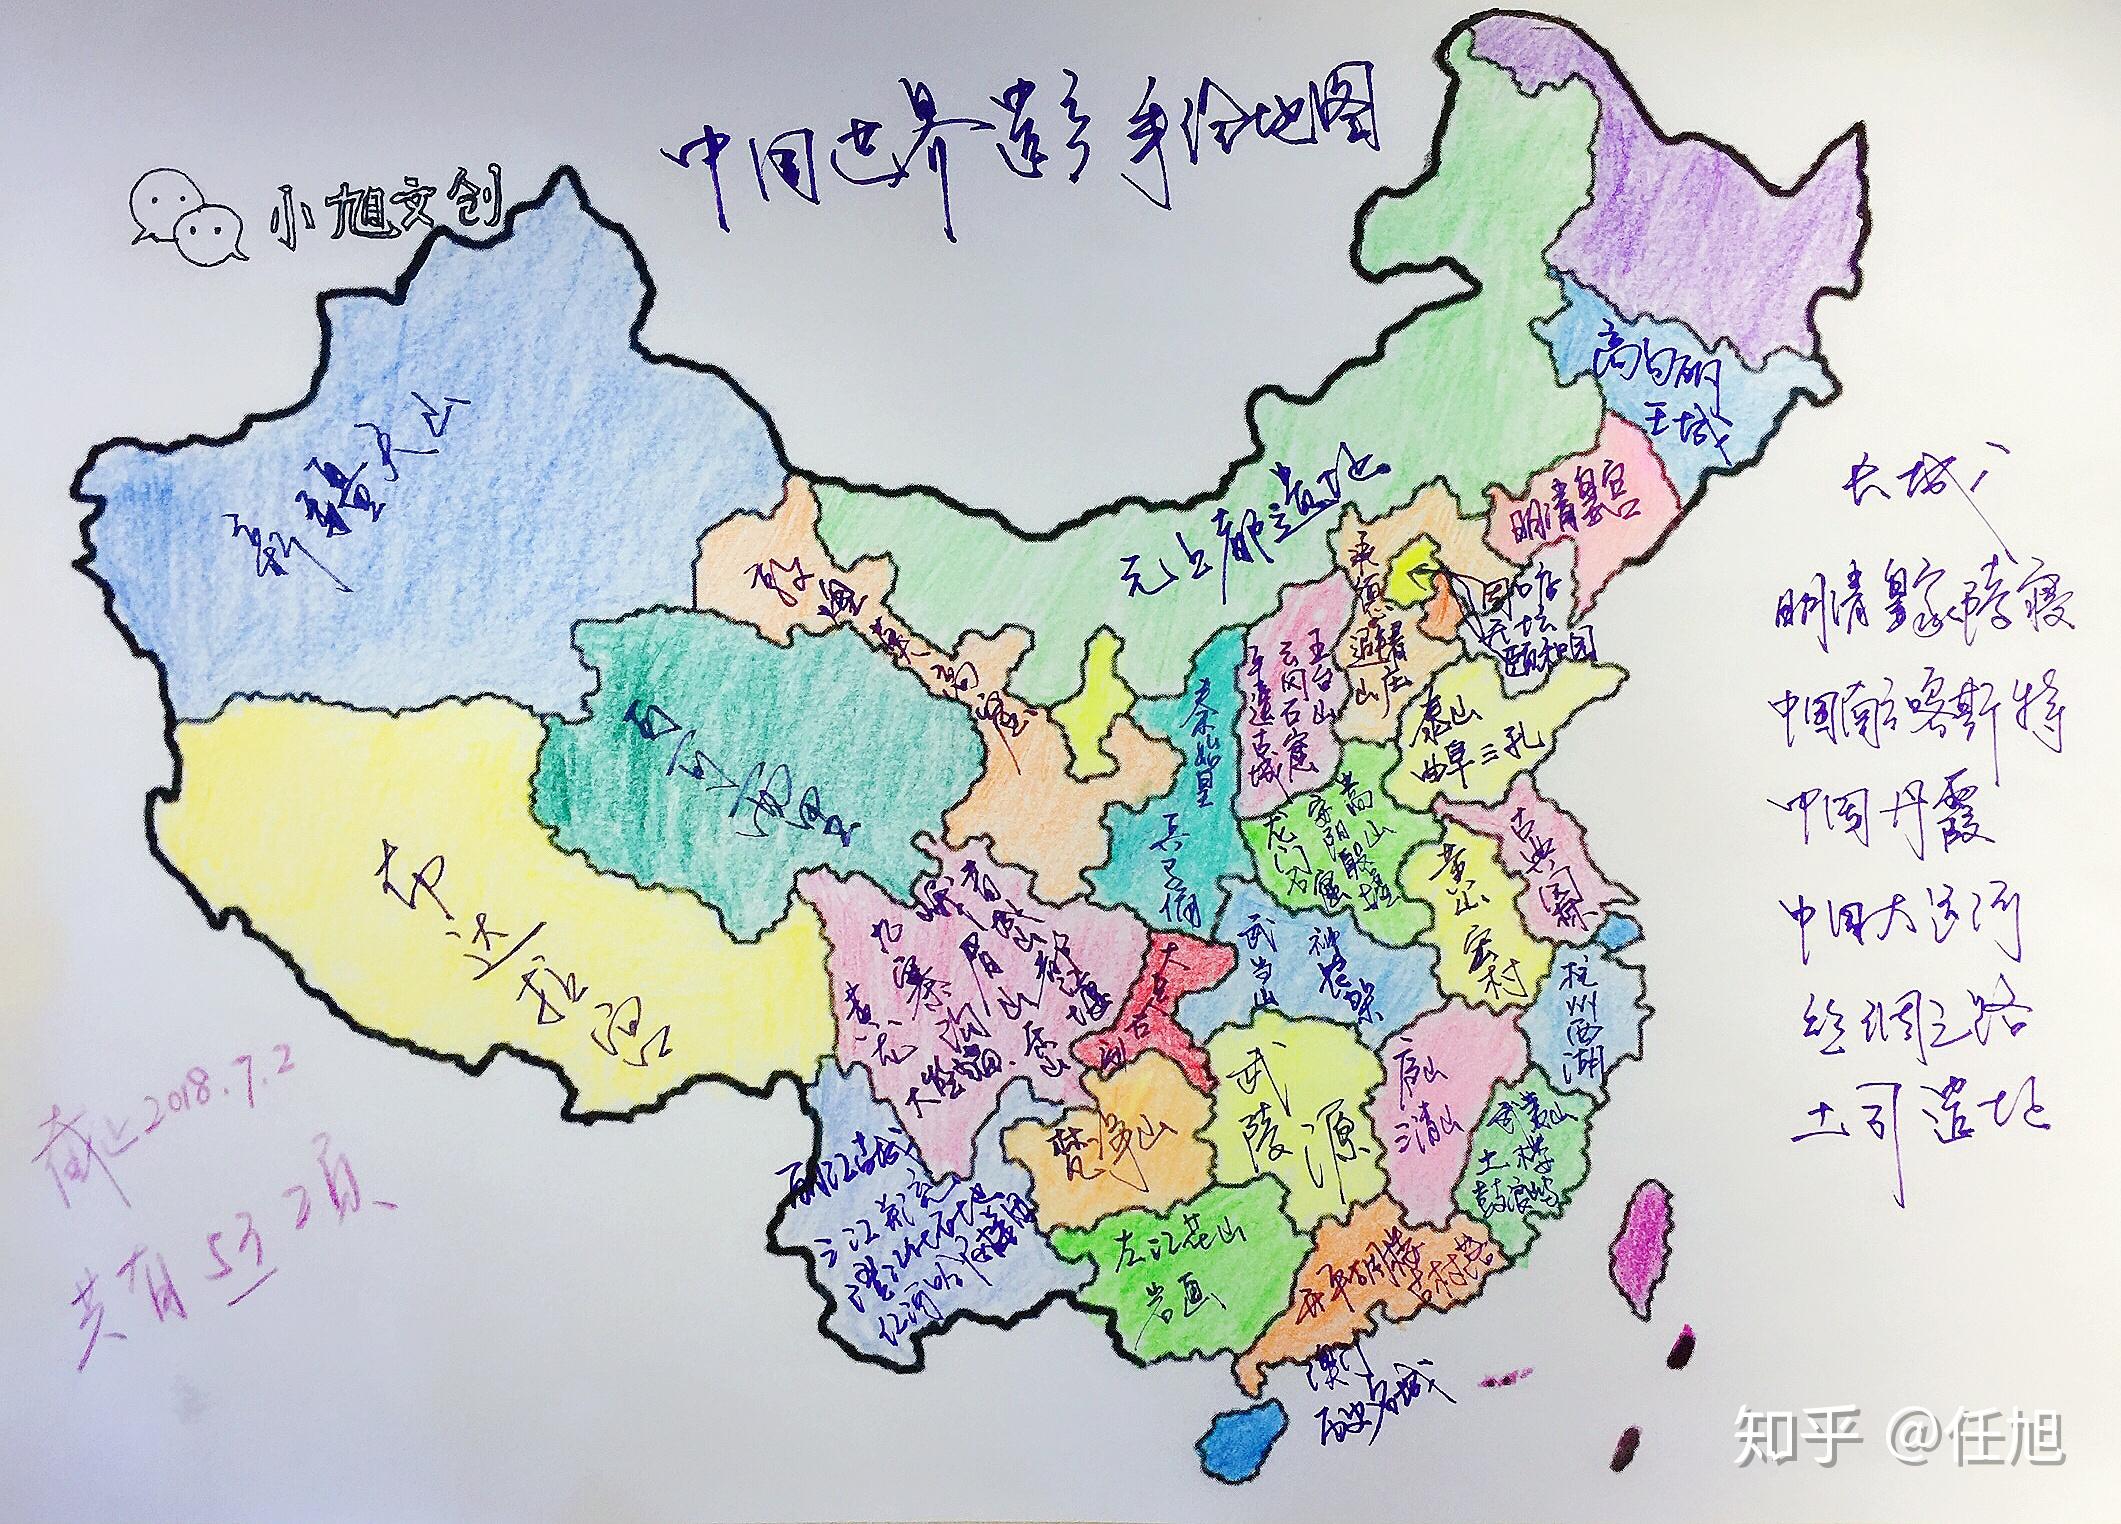 西安市曲江第一中学手绘地图大赛-西安市曲江第一中学欢迎您!